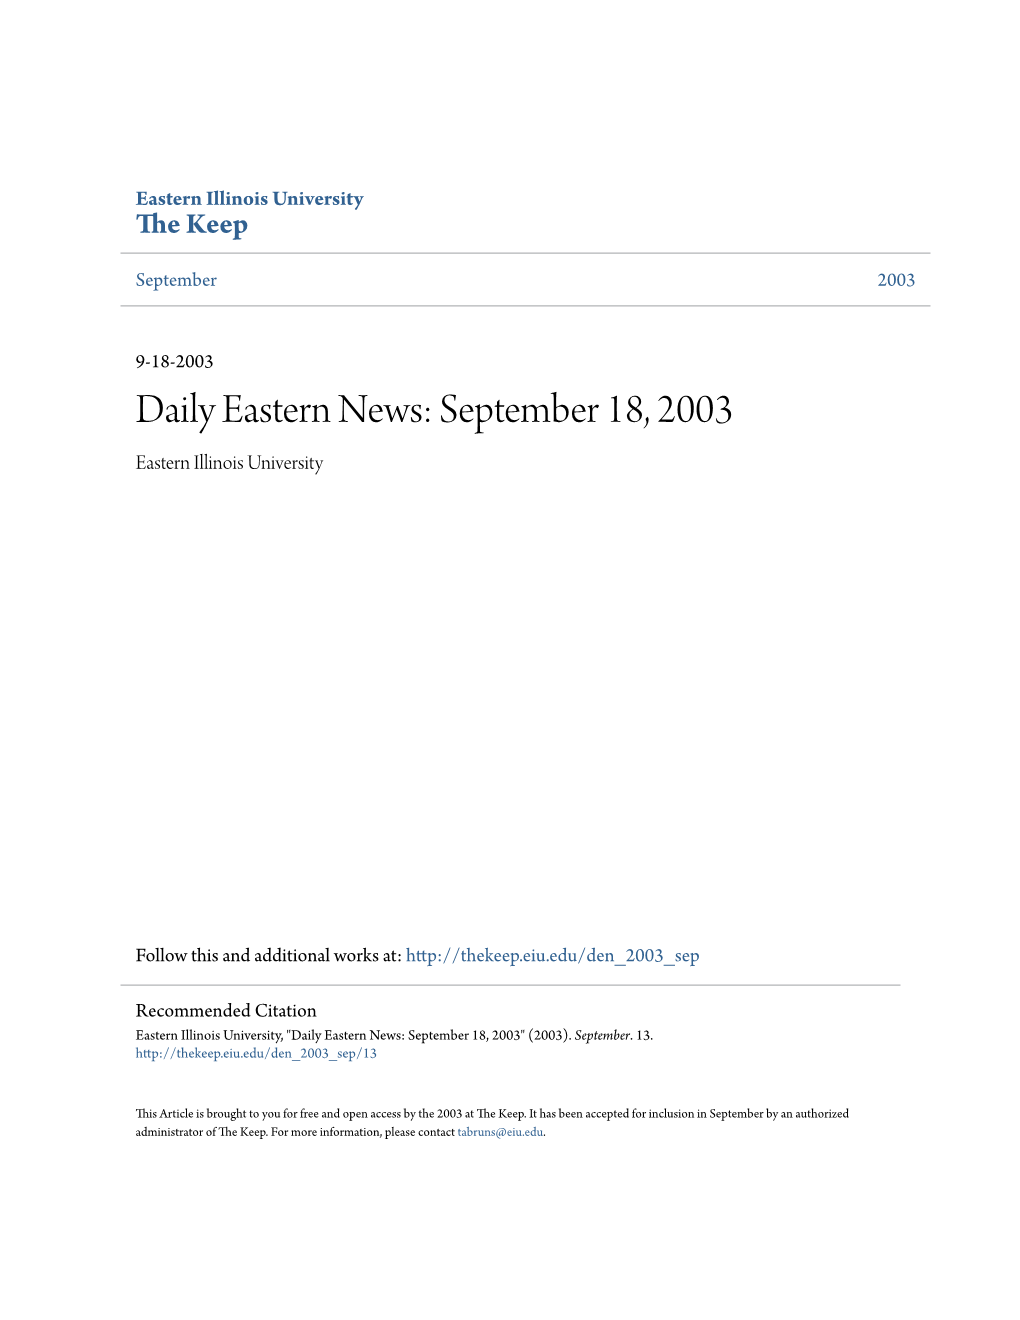 Daily Eastern News: September 18, 2003 Eastern Illinois University